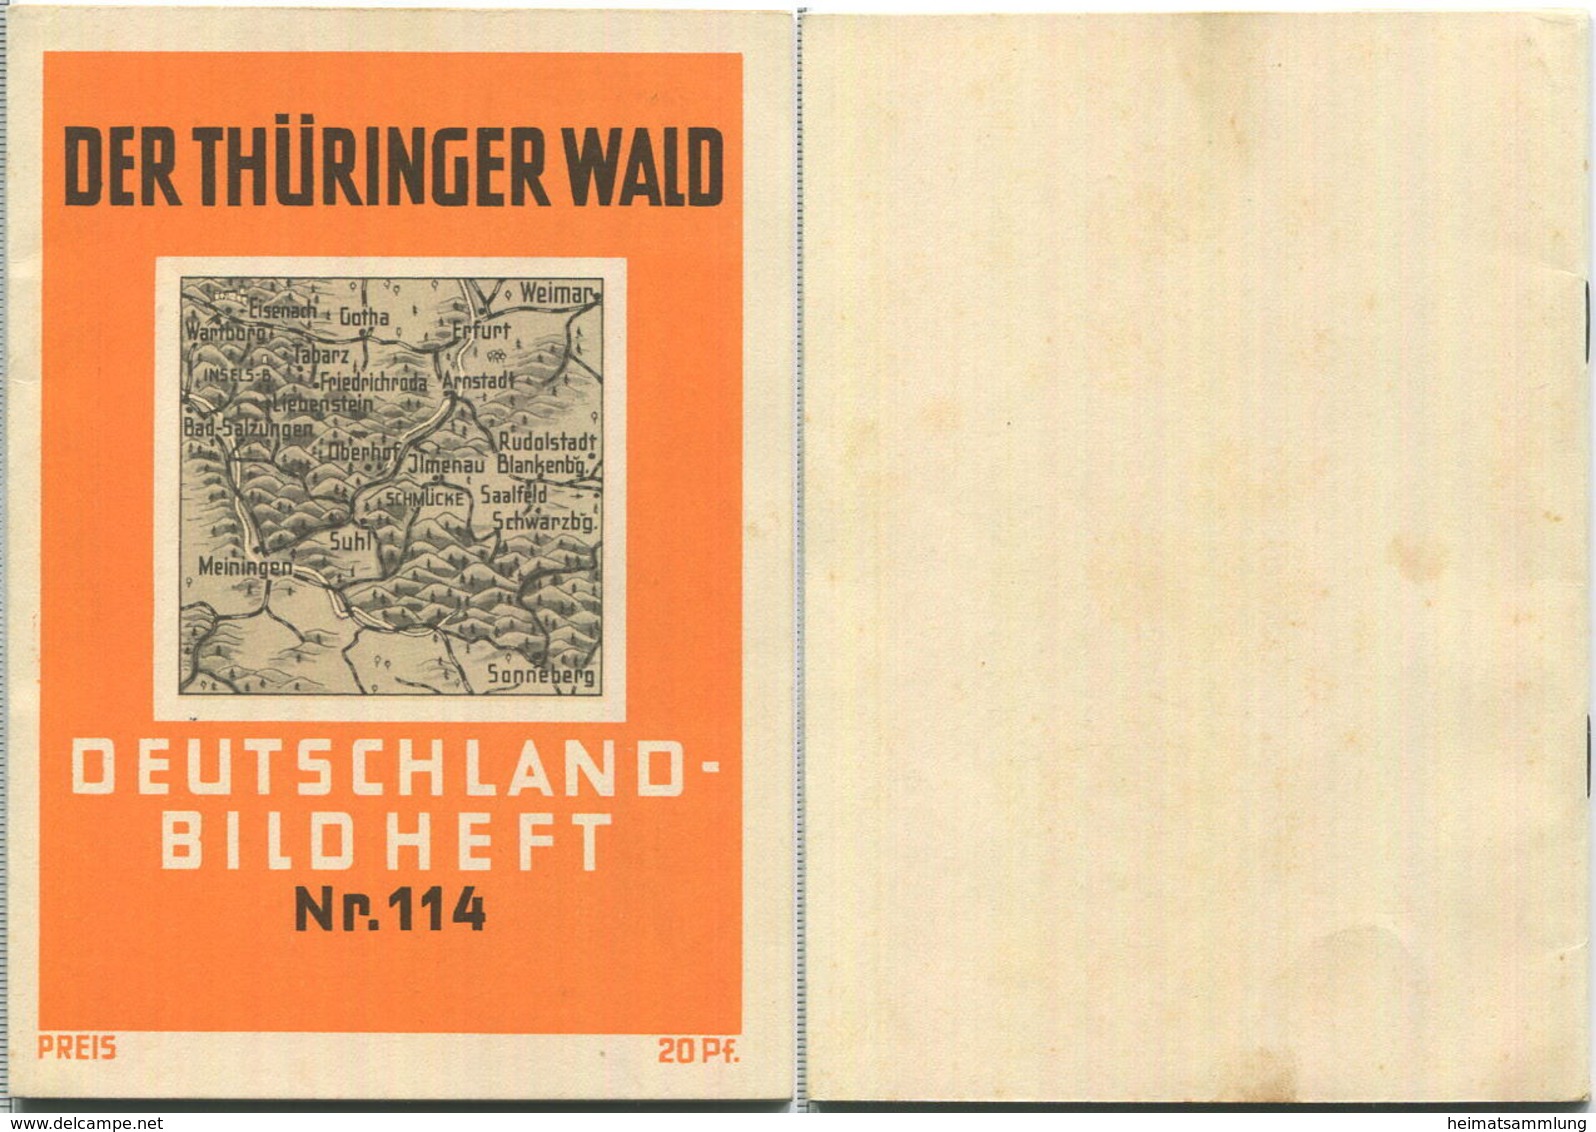 Nr. 114 Deutschland-Bildheft - Thüringer Wald - Turingia